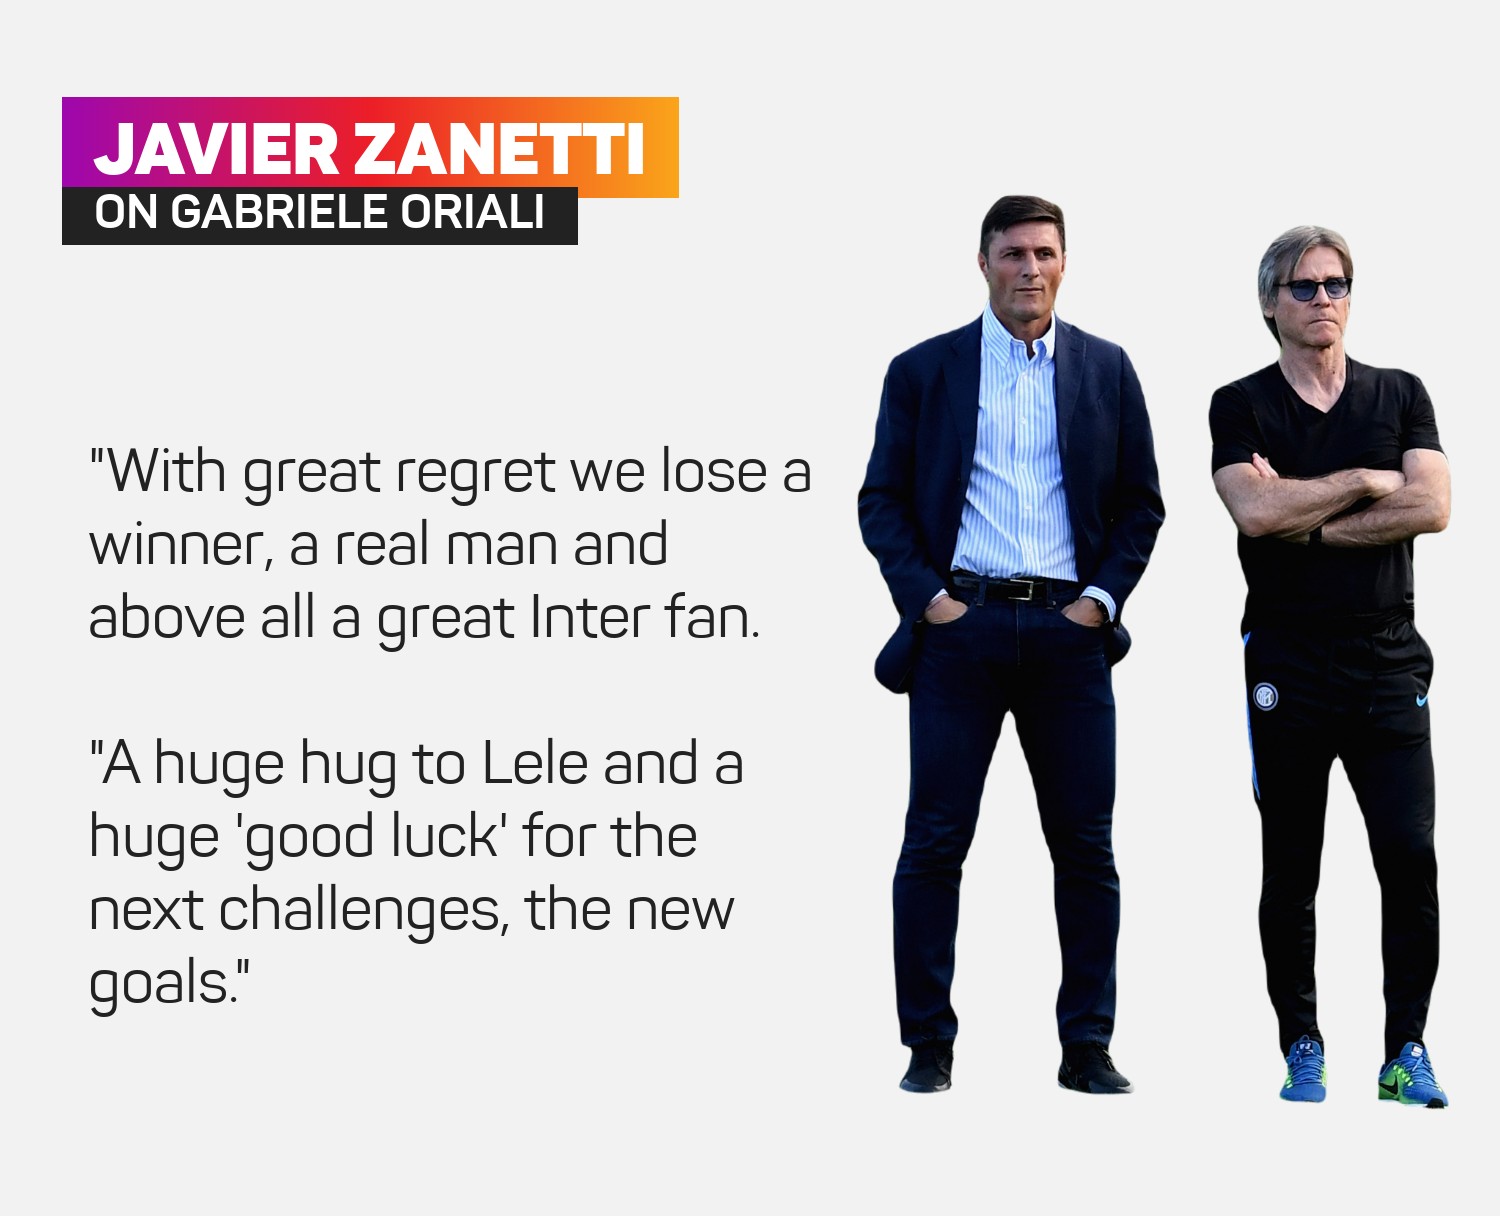 Javier Zanetti paid a fond tribute